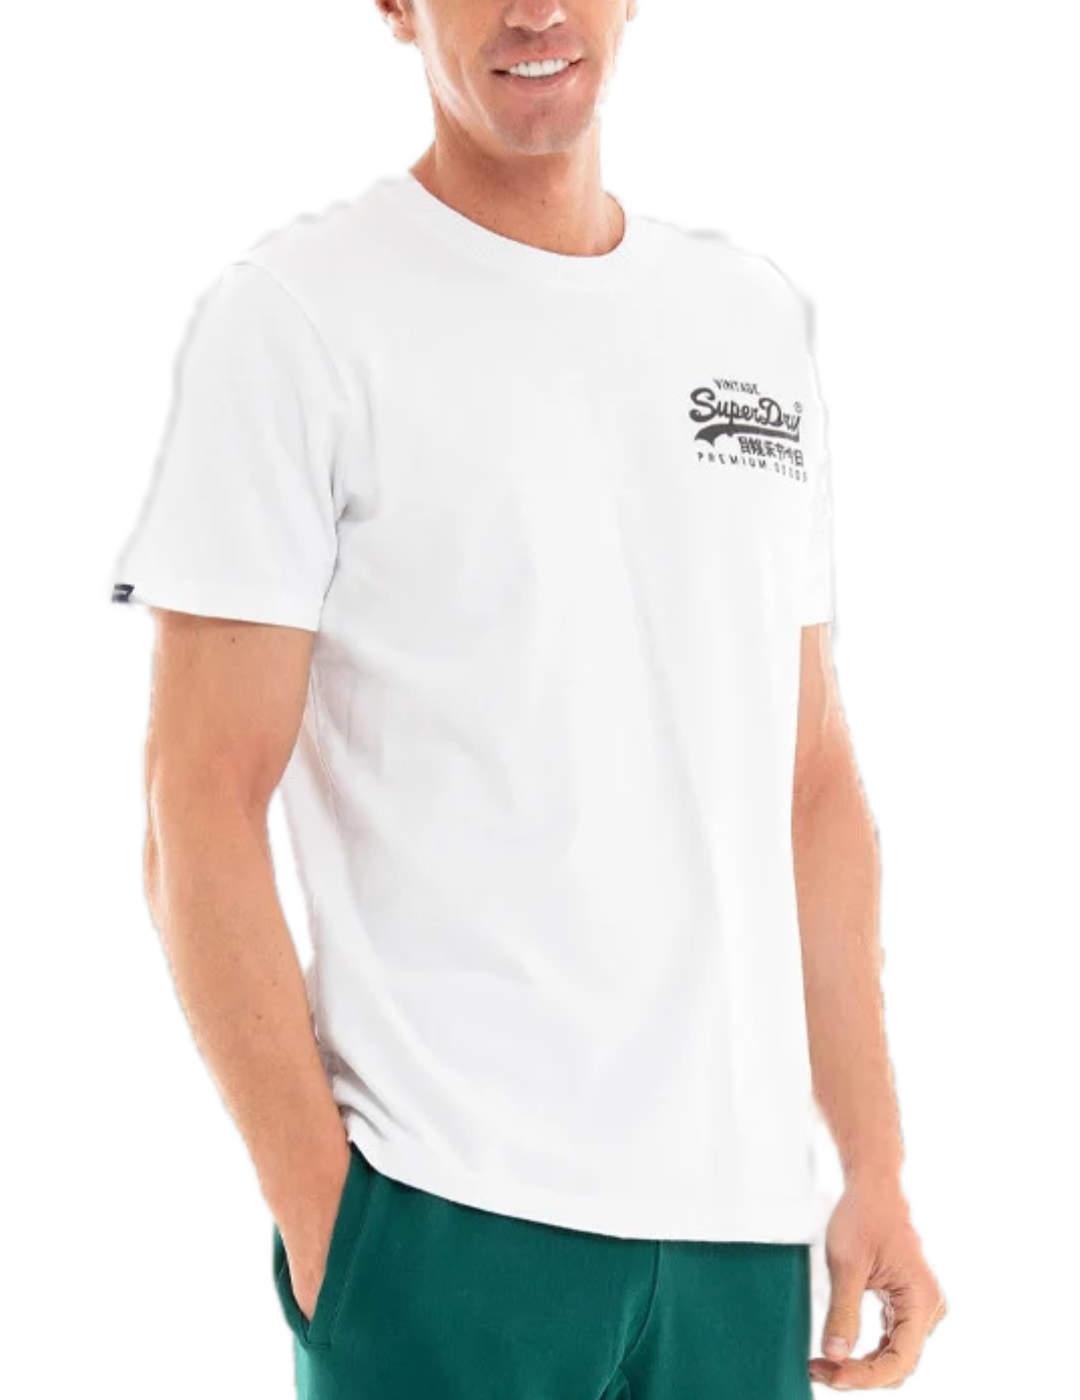 Camiseta Supedry Vintage blanca de hombre-b